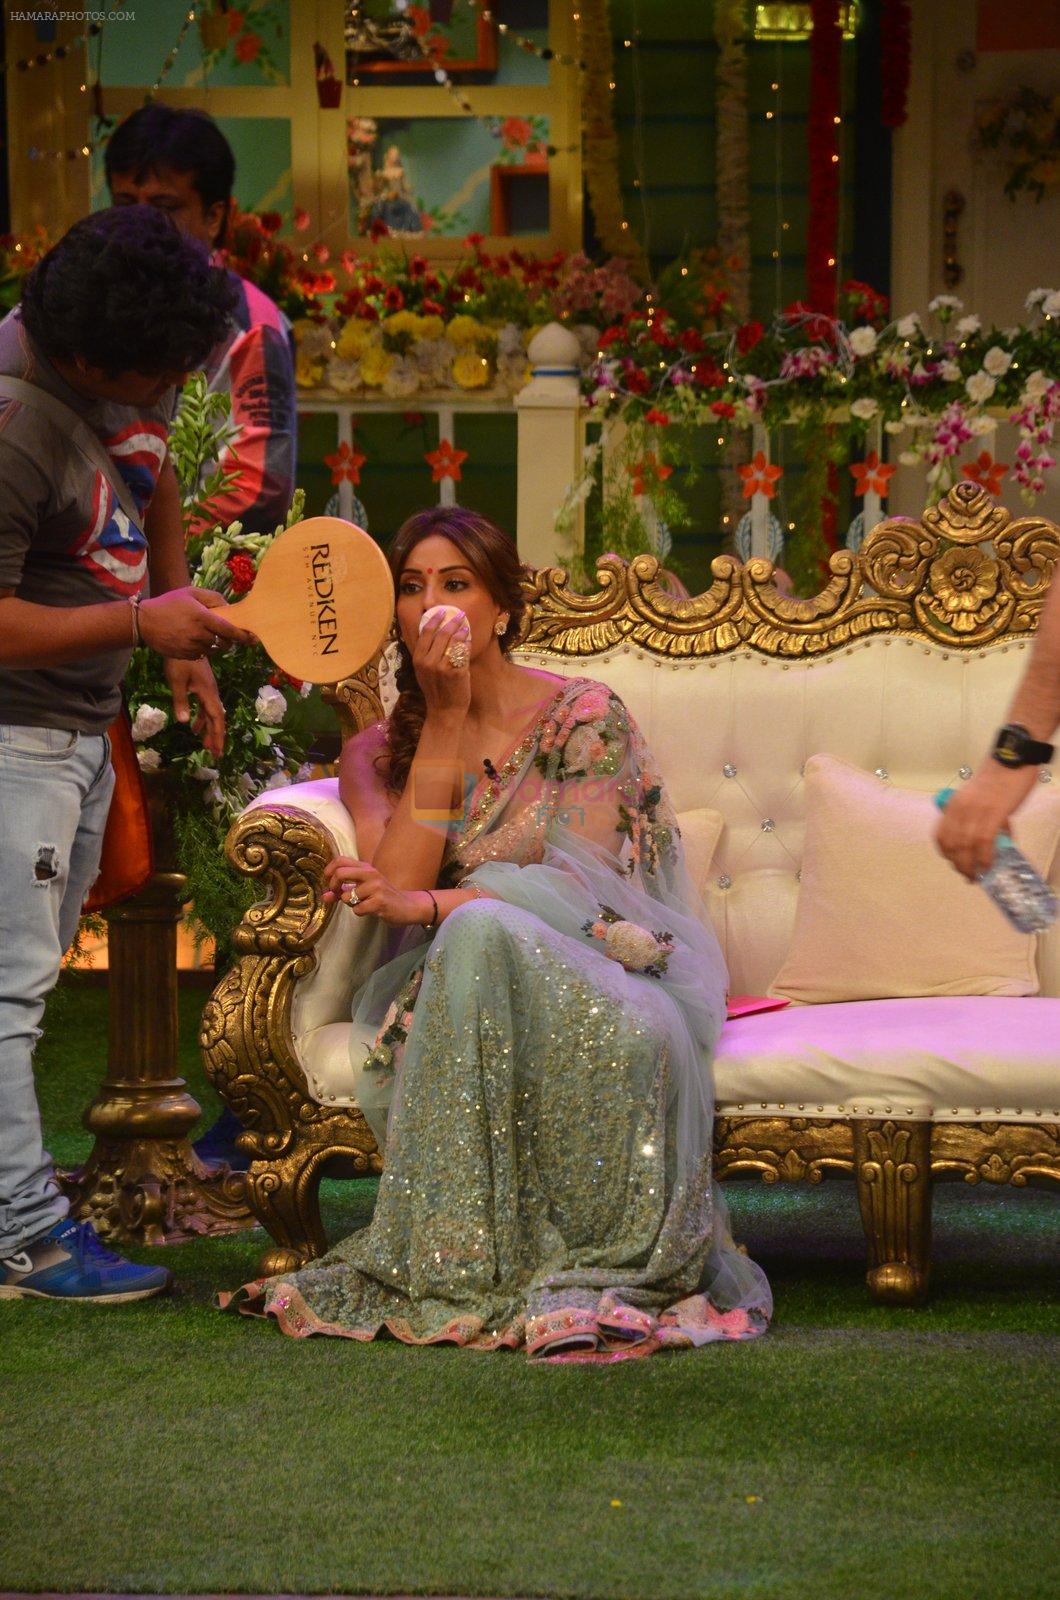 Bipasha Basu on the sets of Kapil Sharma Show on 28th May 2016